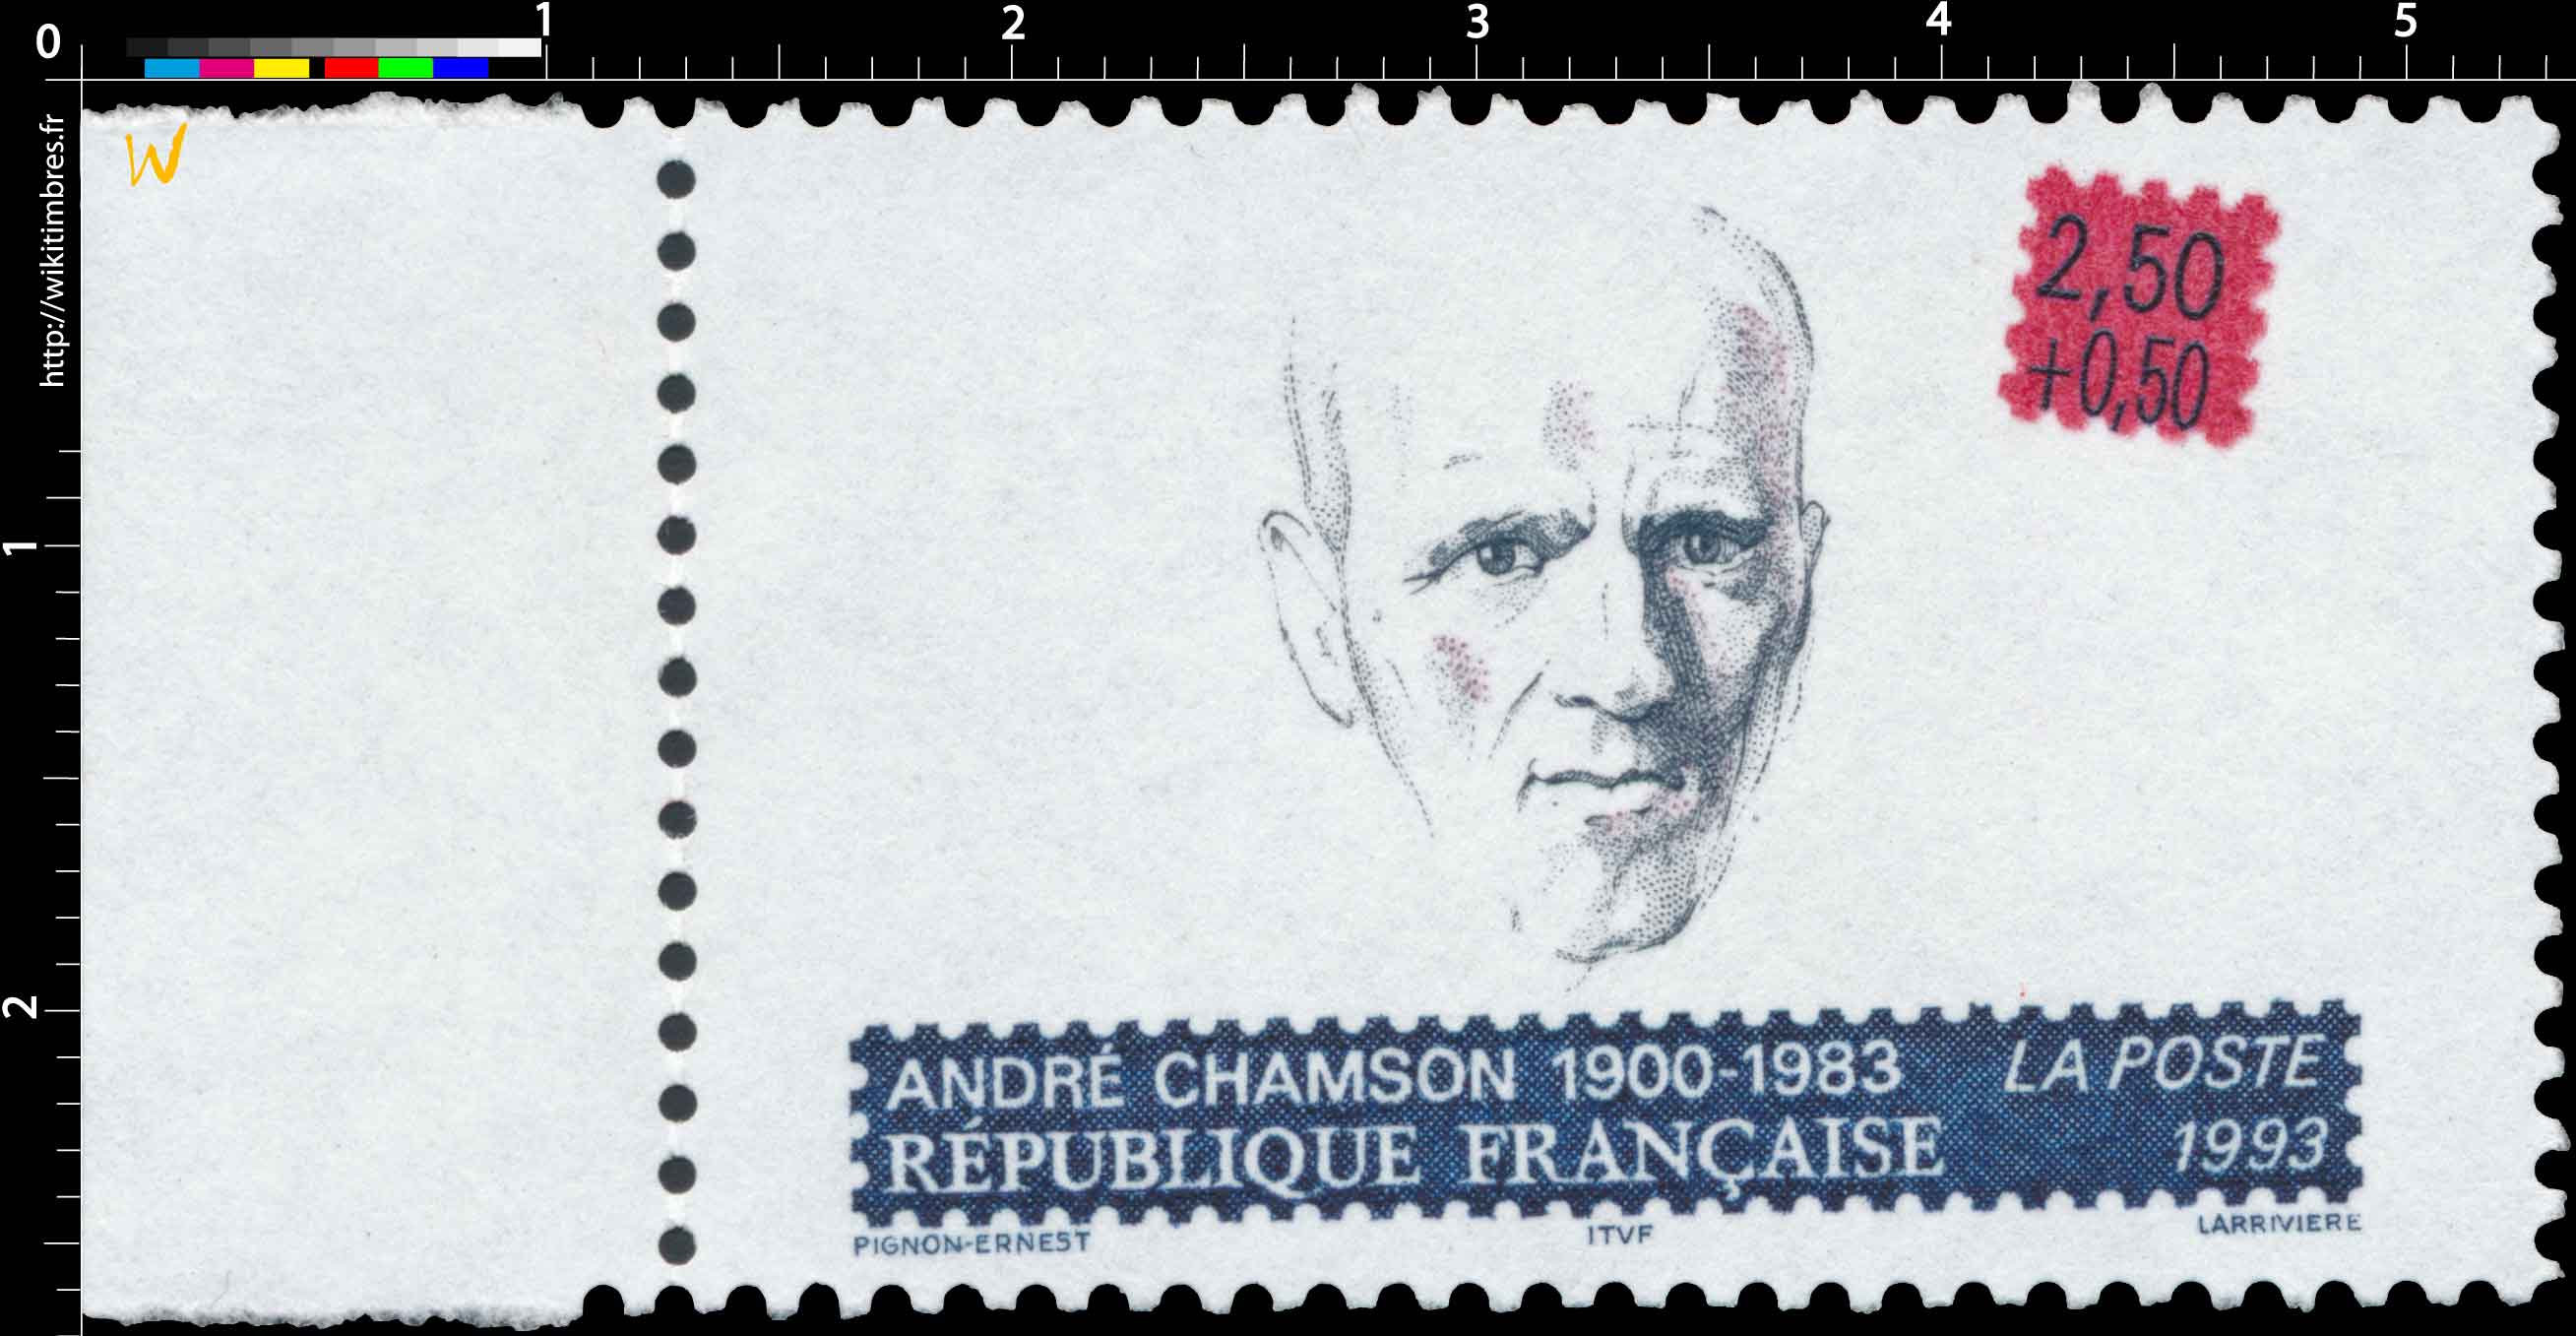 1993 ANDRÉ CHAMSON 1900-1983